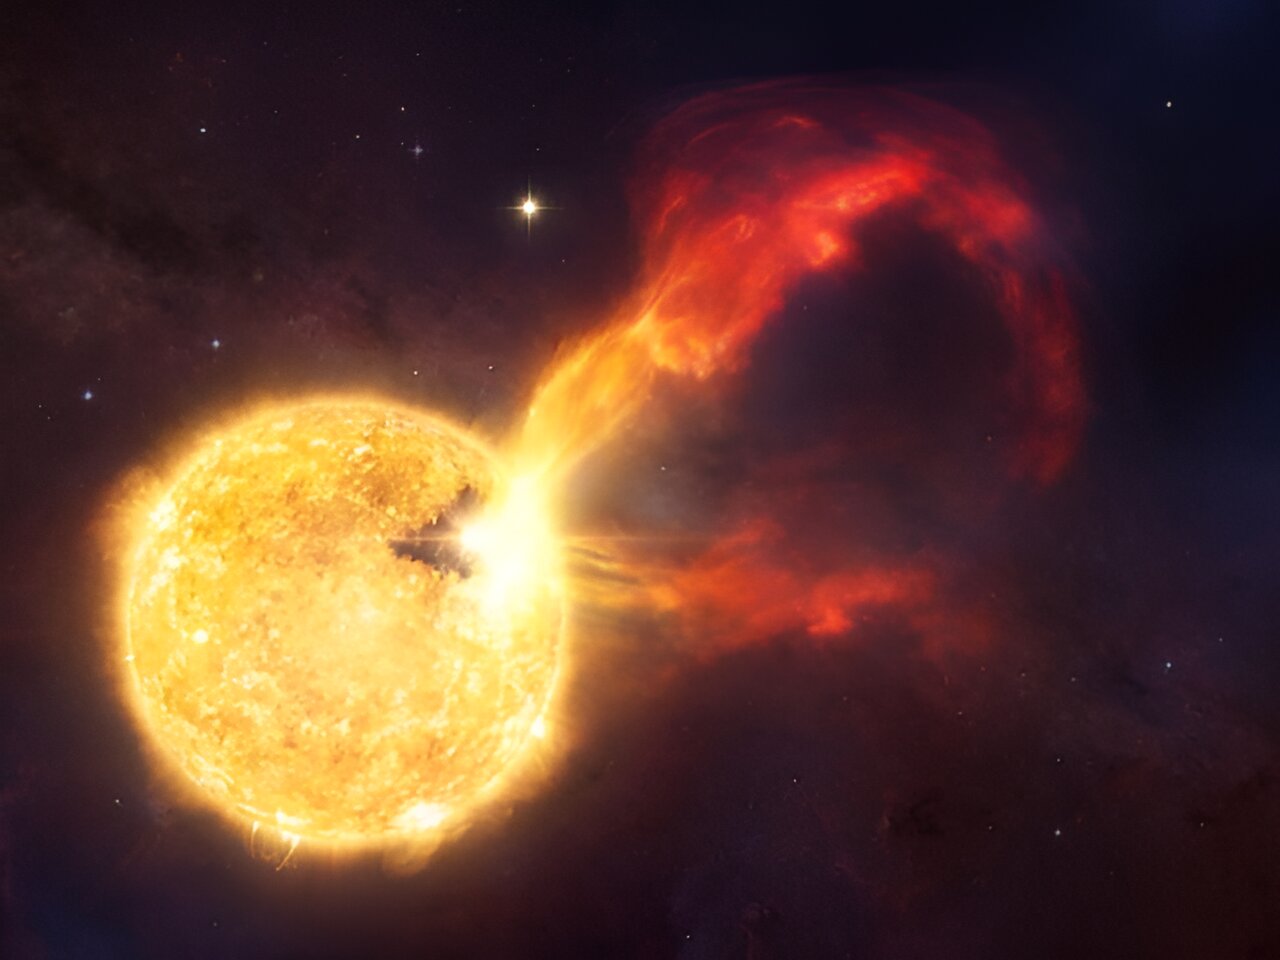 Une éruption intense sur de jeunes étoiles semblables au Soleil suggère un environnement brutal pour le développement exoplanétaire